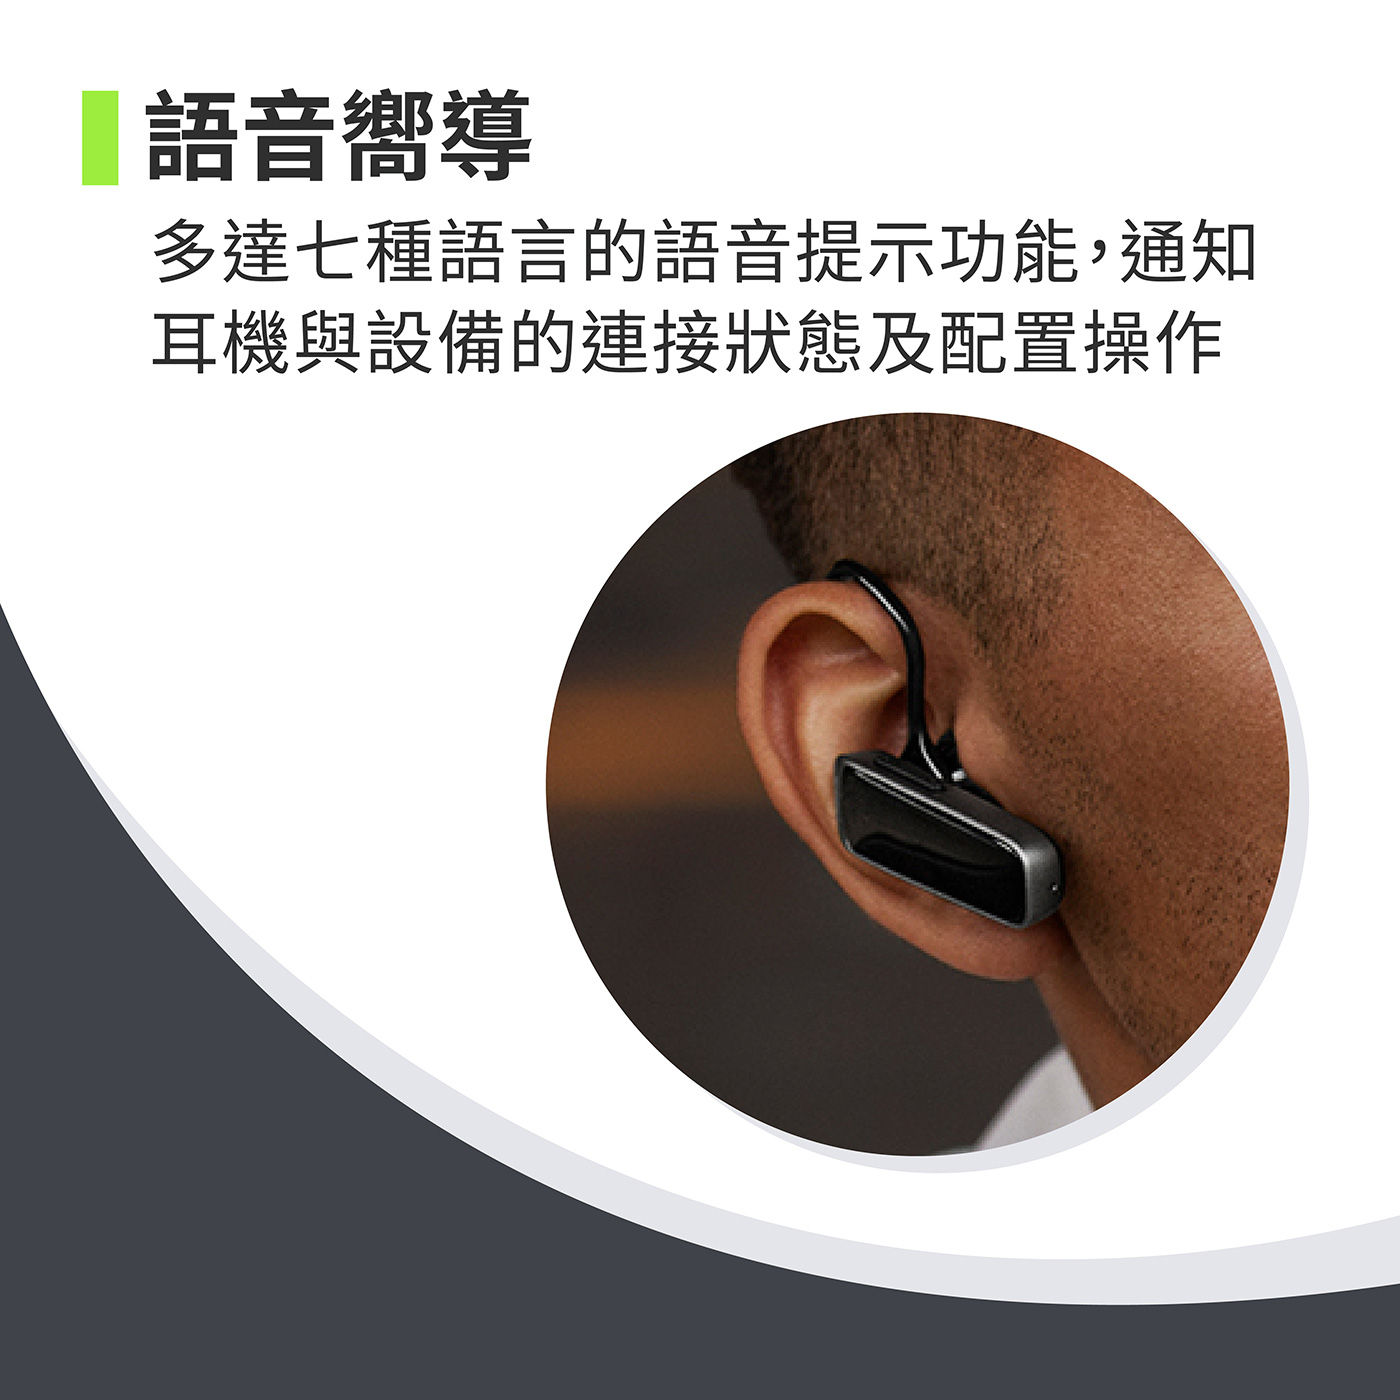 Jabra Talk 25 SE 立體聲單耳藍牙耳機，附語音嚮導功能，7種語言提示功能，通知耳機與設備連接狀態及配置操作。